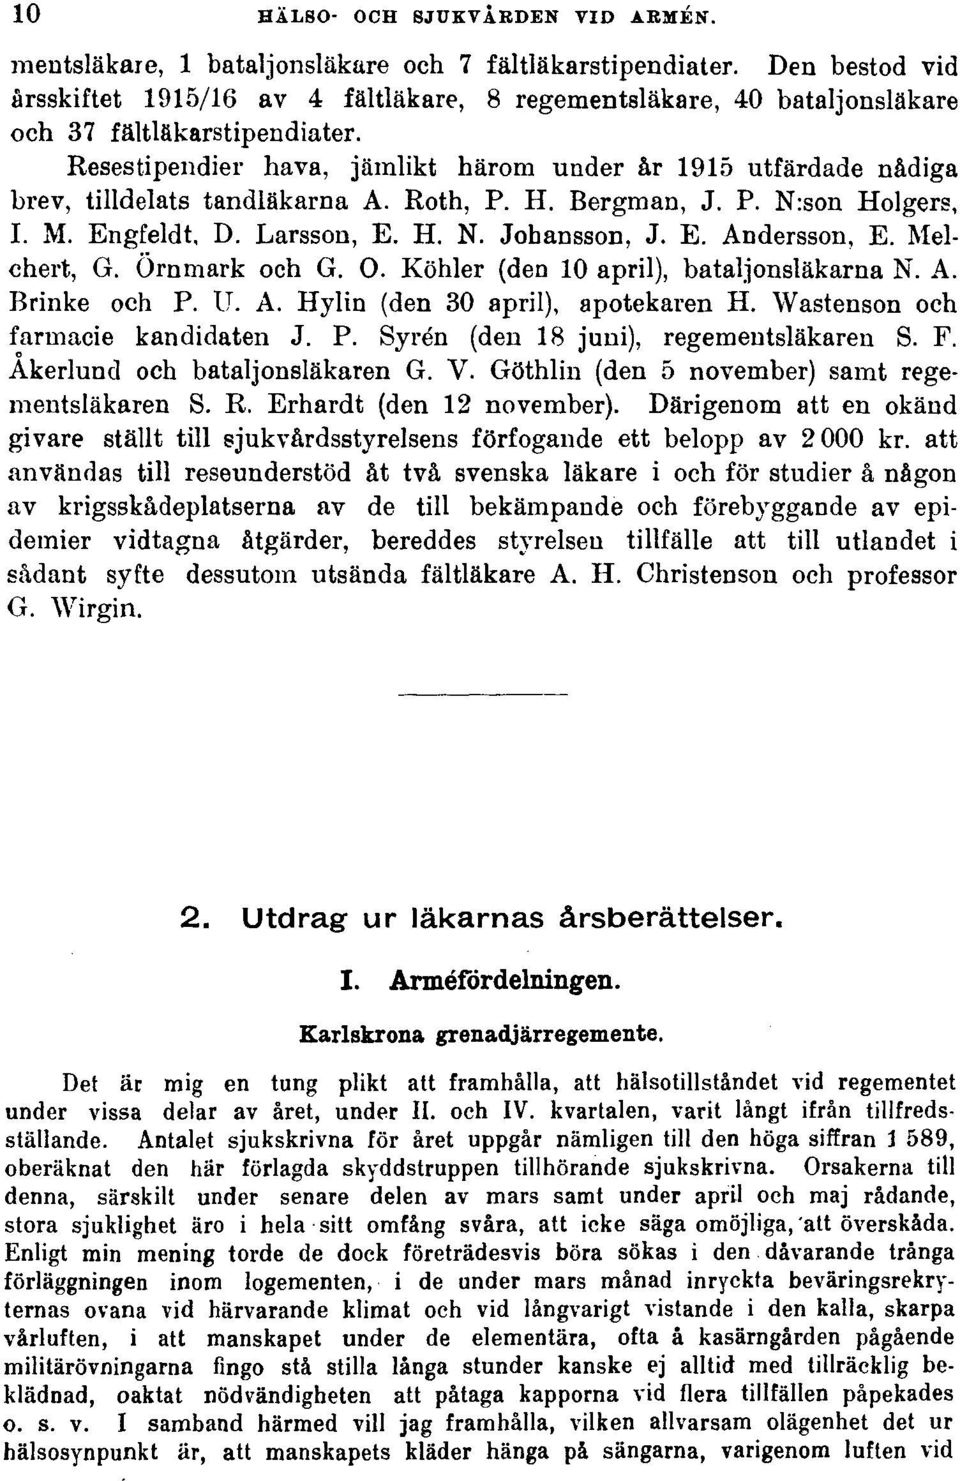 Resestipendier hava, jämlikt härom under år 1915 utfärdade nådiga brev, tilldelats tandläkarna A. Roth, P. H. Bergman, J. P. N:son Holgers, I. M. Engfeldt, D. Larsson, E. H. N. Johansson, J. E. Andersson, E.